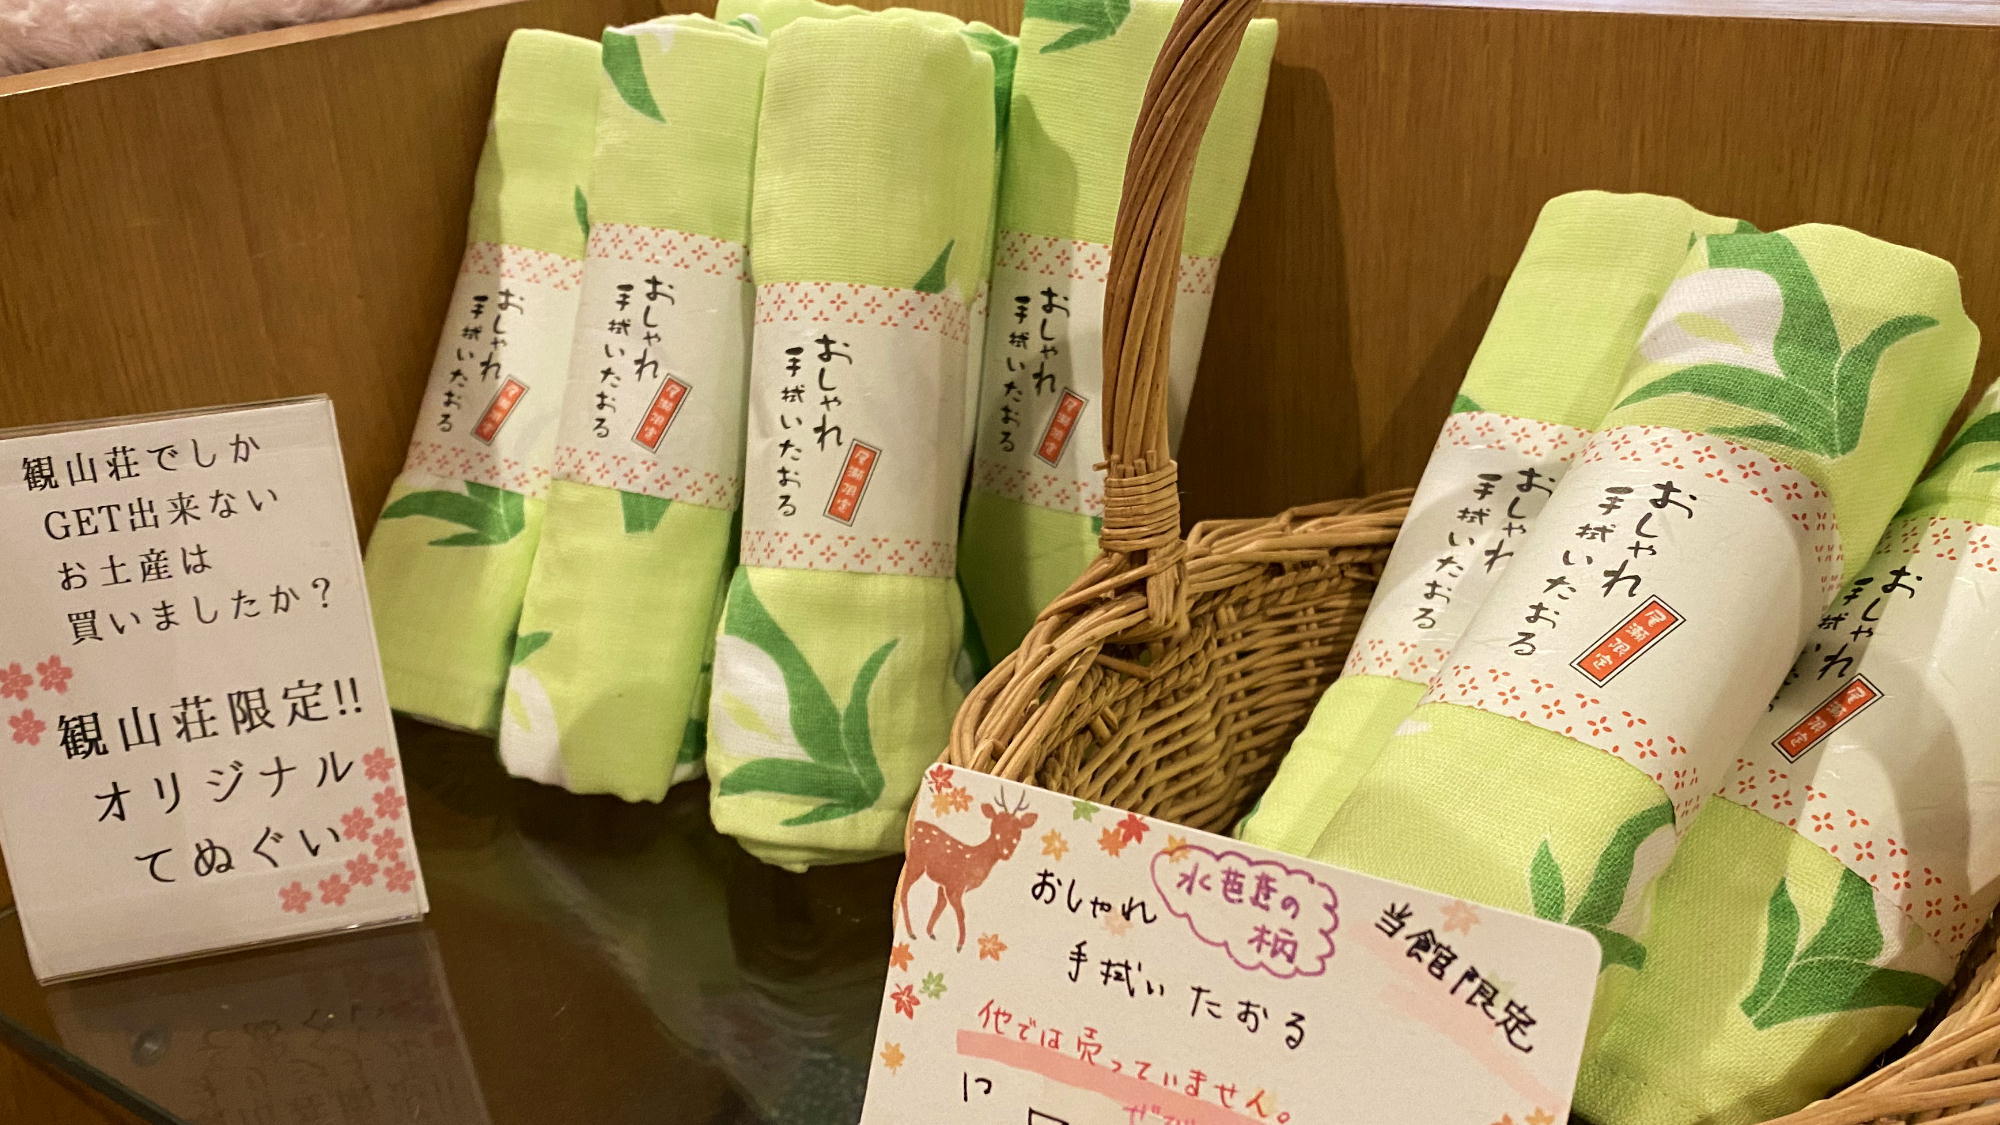 【売店】かわいい水芭蕉柄の観山荘オリジナルタオル